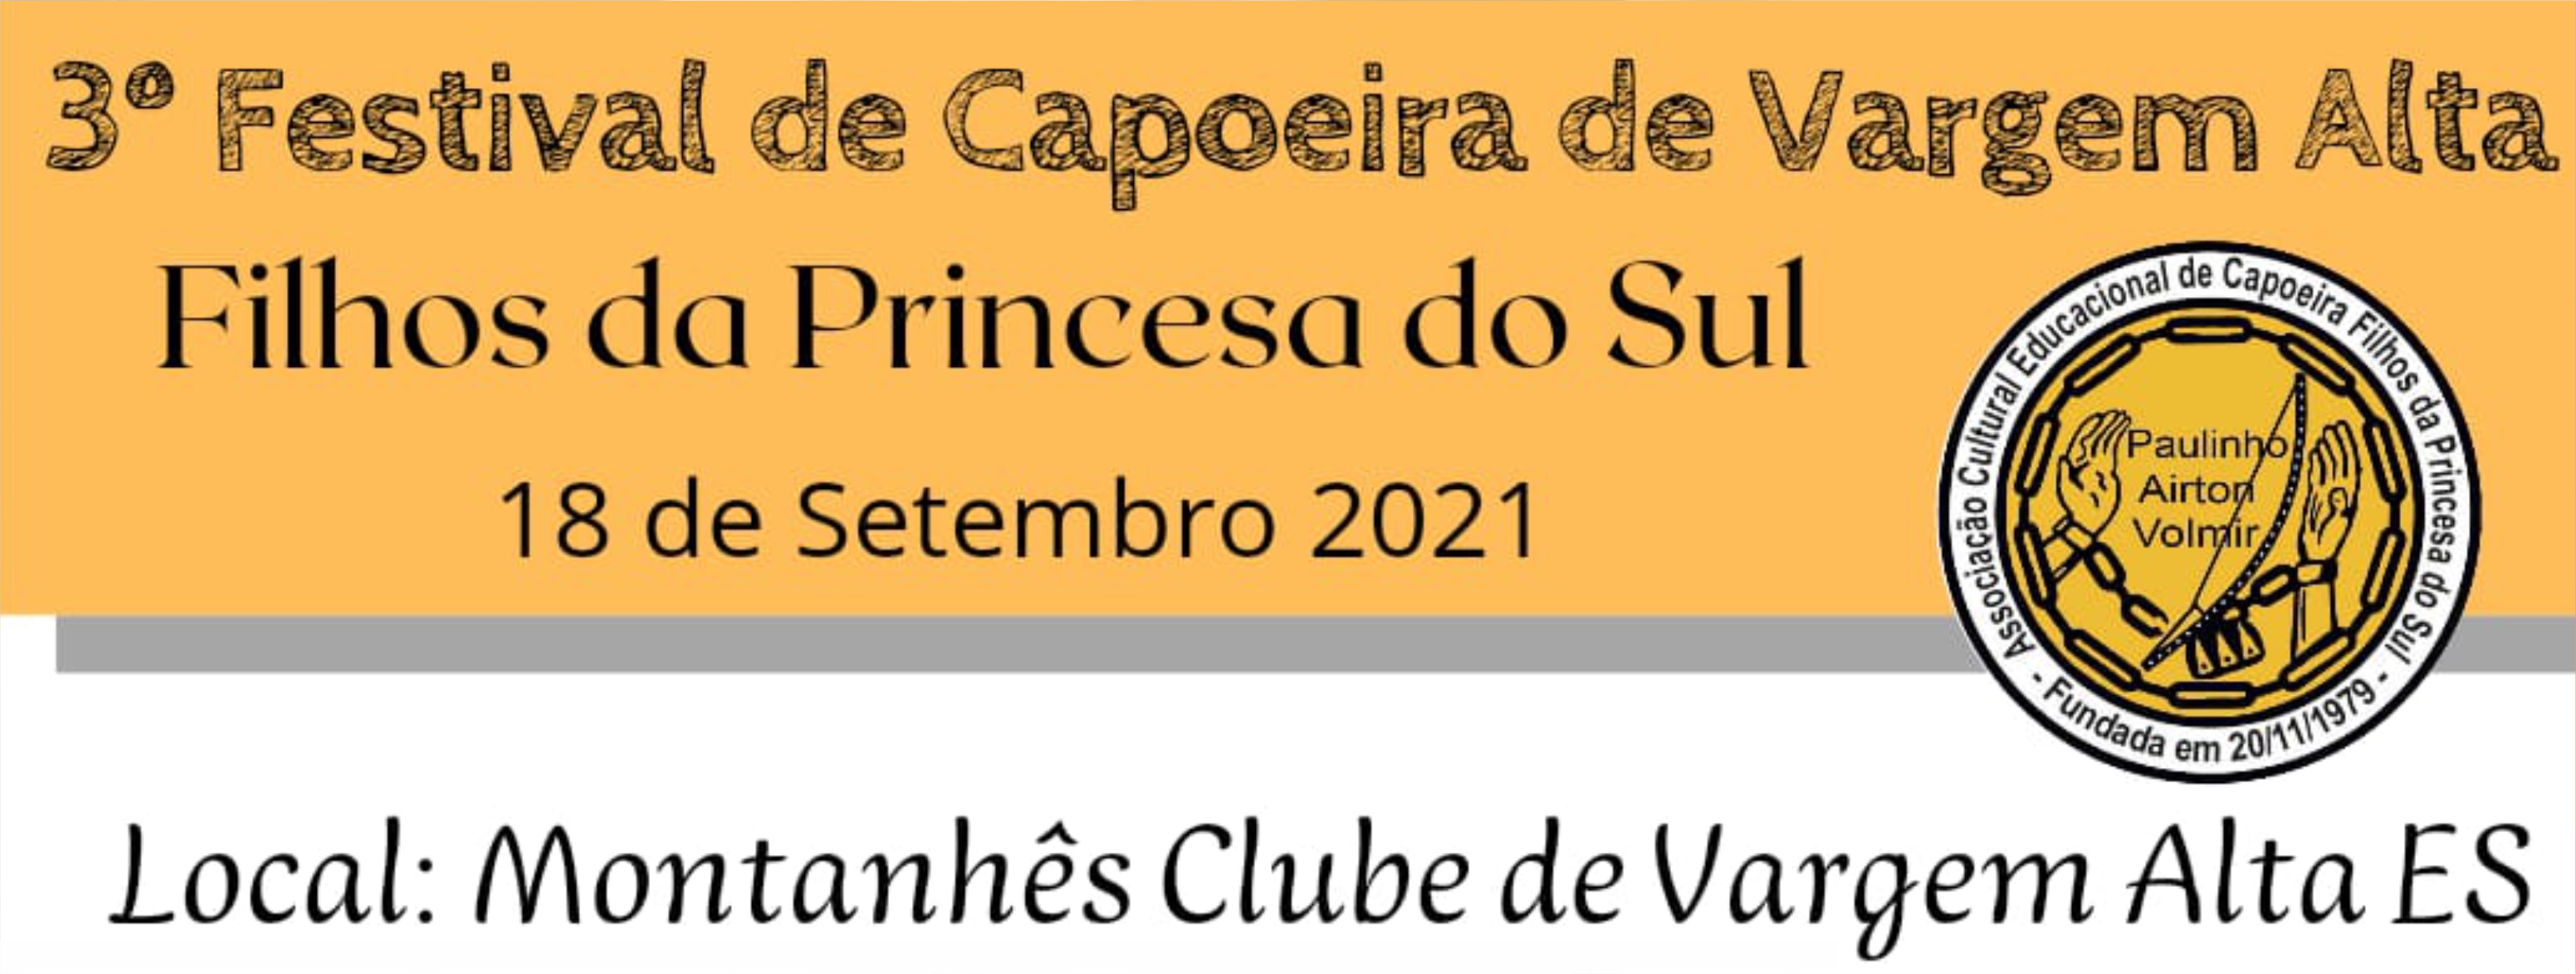 3º Festival de Capoeira de Vargem Alta ocorre neste sábado (18)